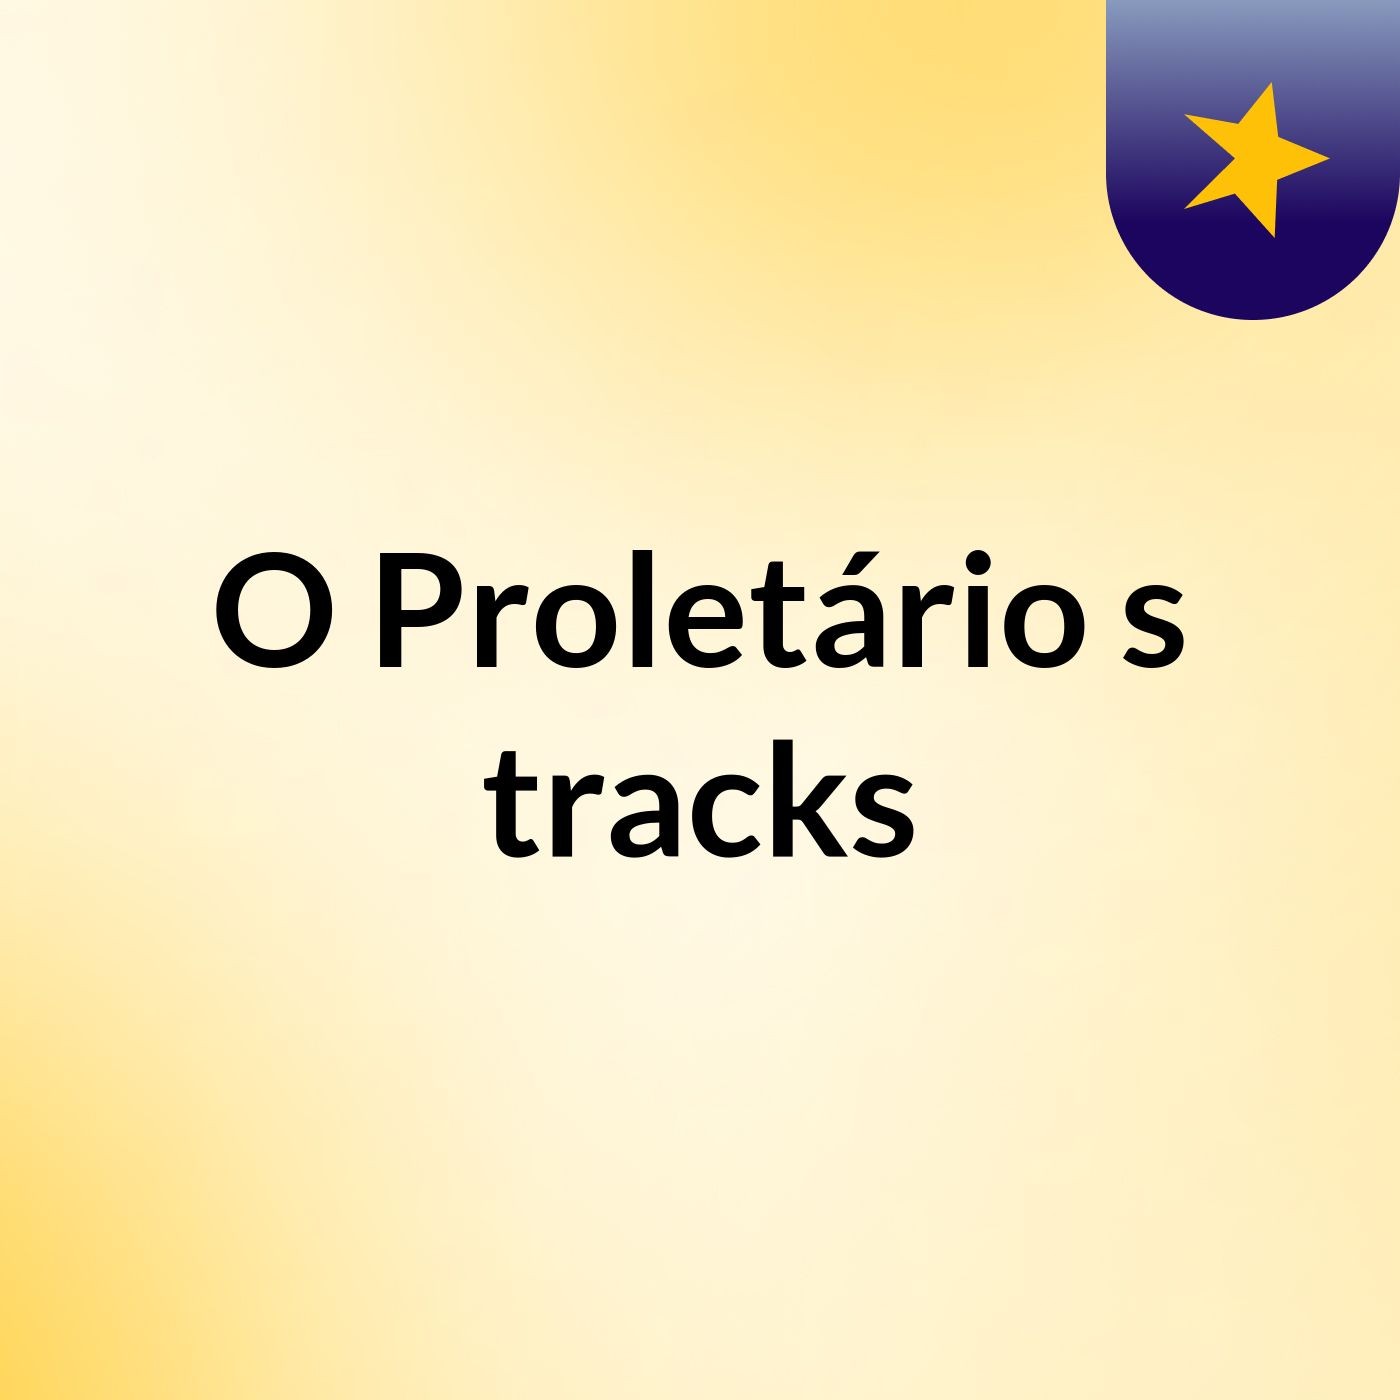 O Proletário's tracks